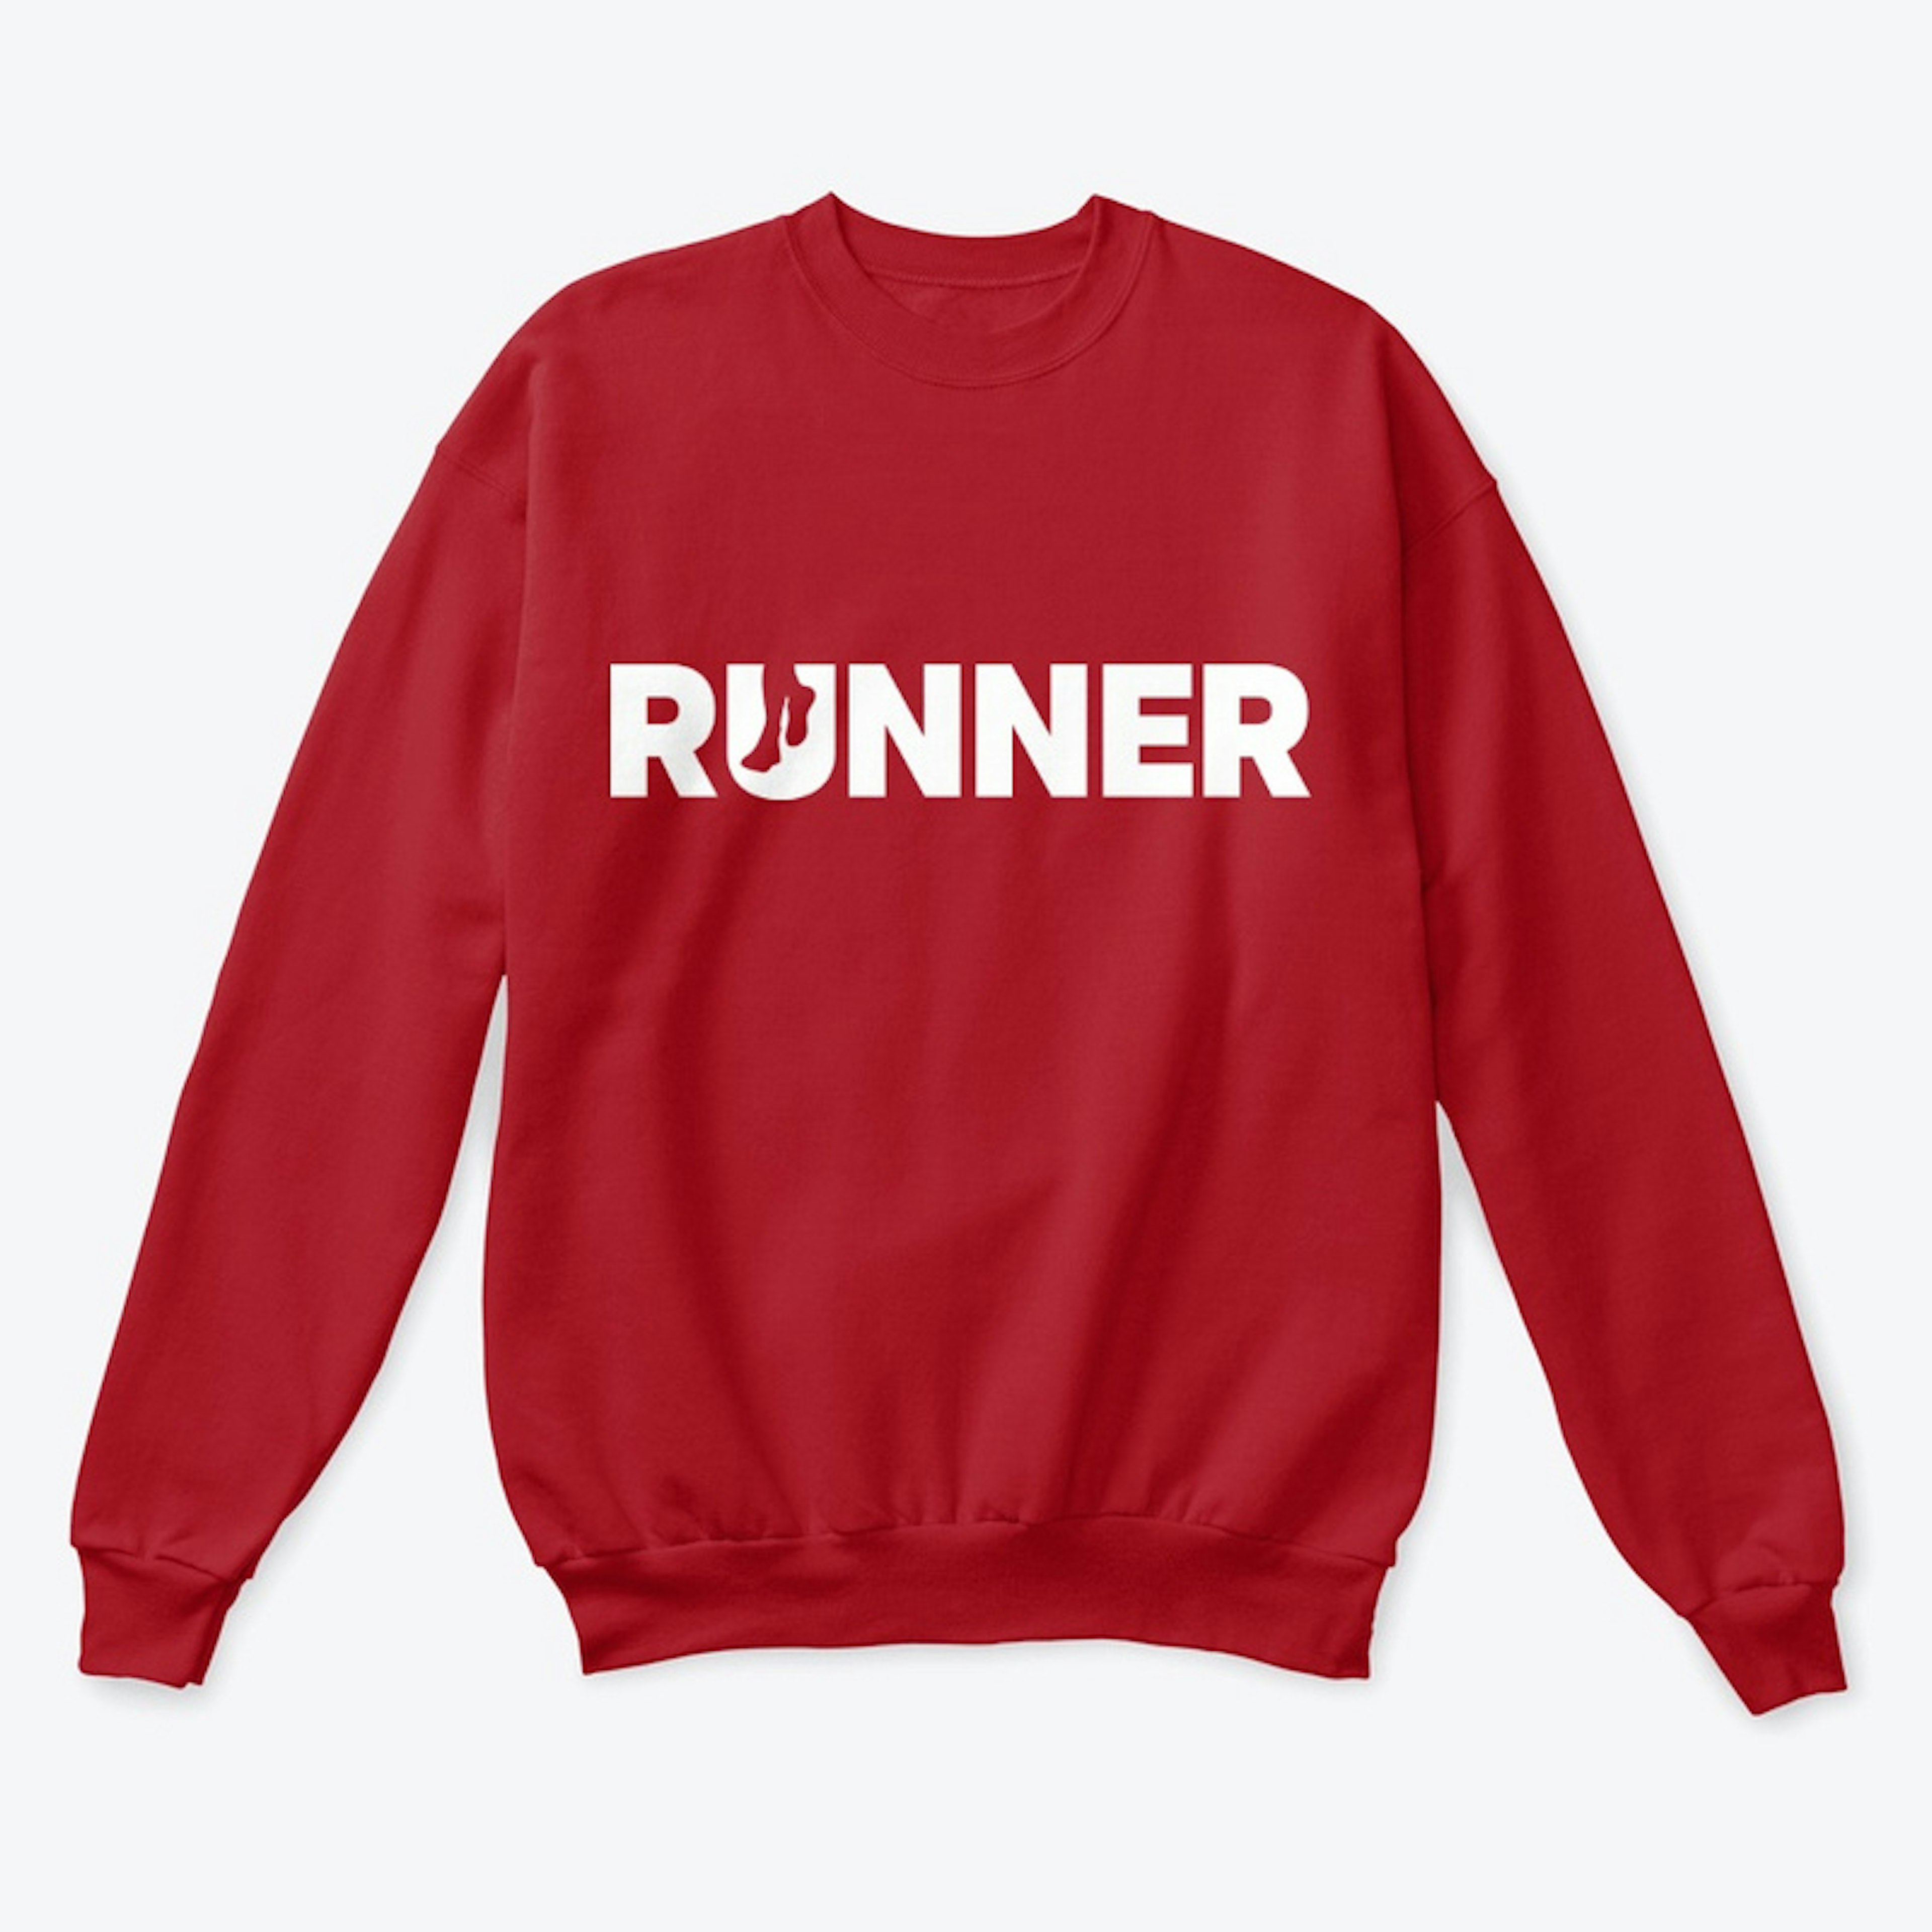 RUNNER Crew Sweatshirt